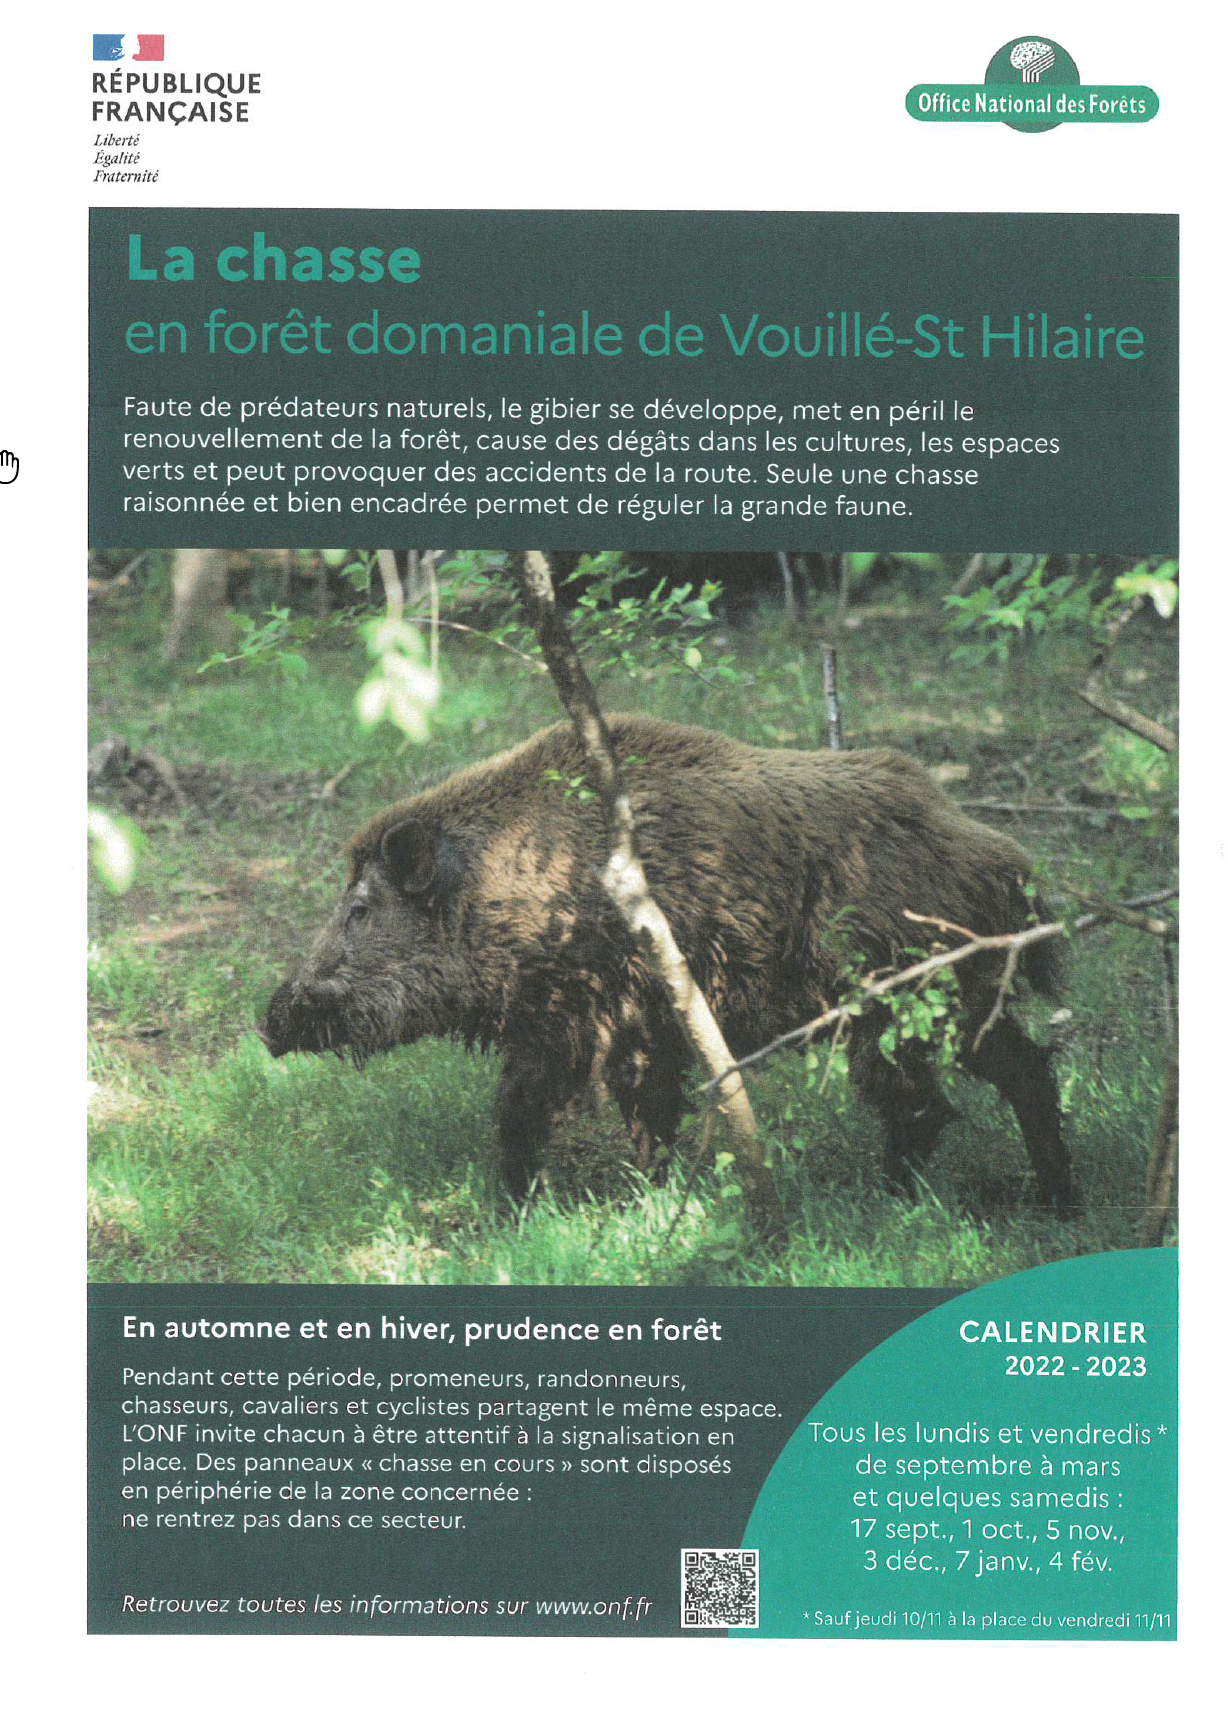 Forêt domaniale de Vouillé : planning des chasses